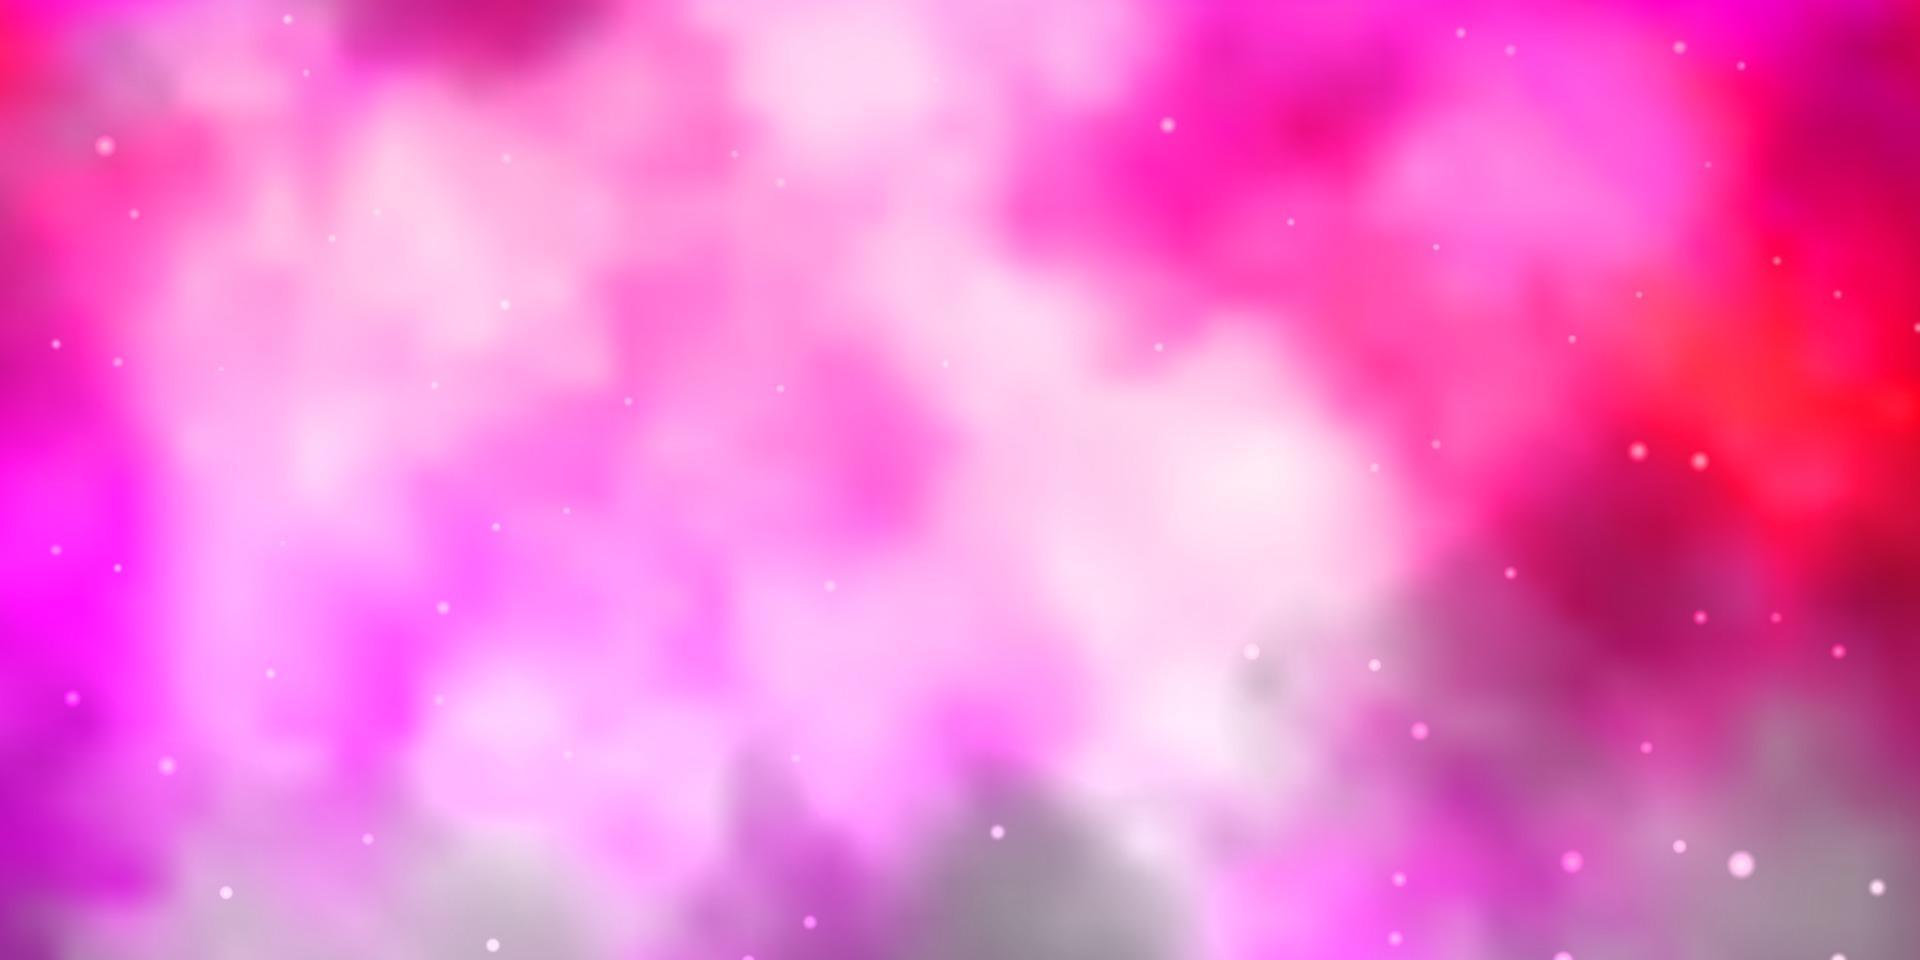 Fondo de vector rosa claro con estrellas de colores.